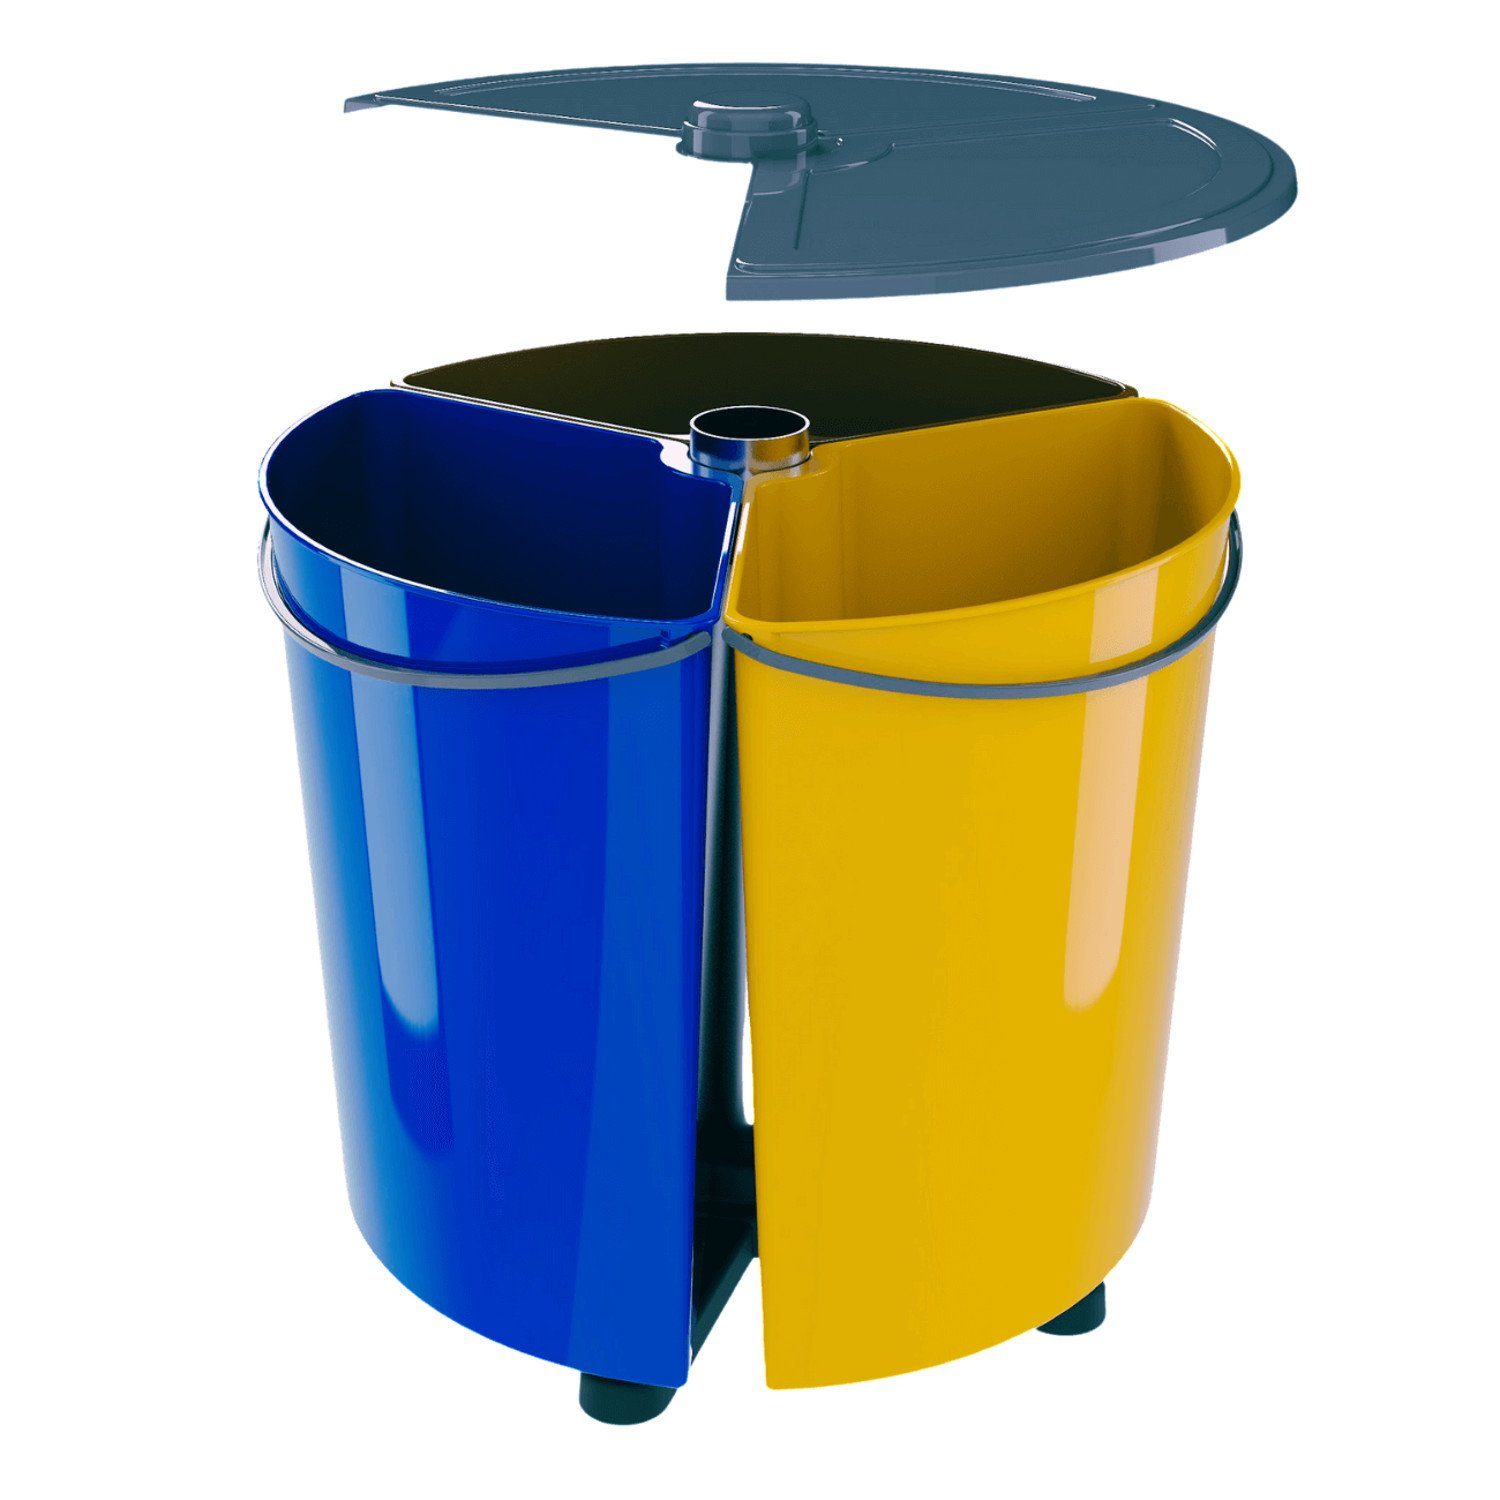 SMARTECO Mülleimer, Drehbarer runder Sortierabfallbehälter mit Deckel Recycling